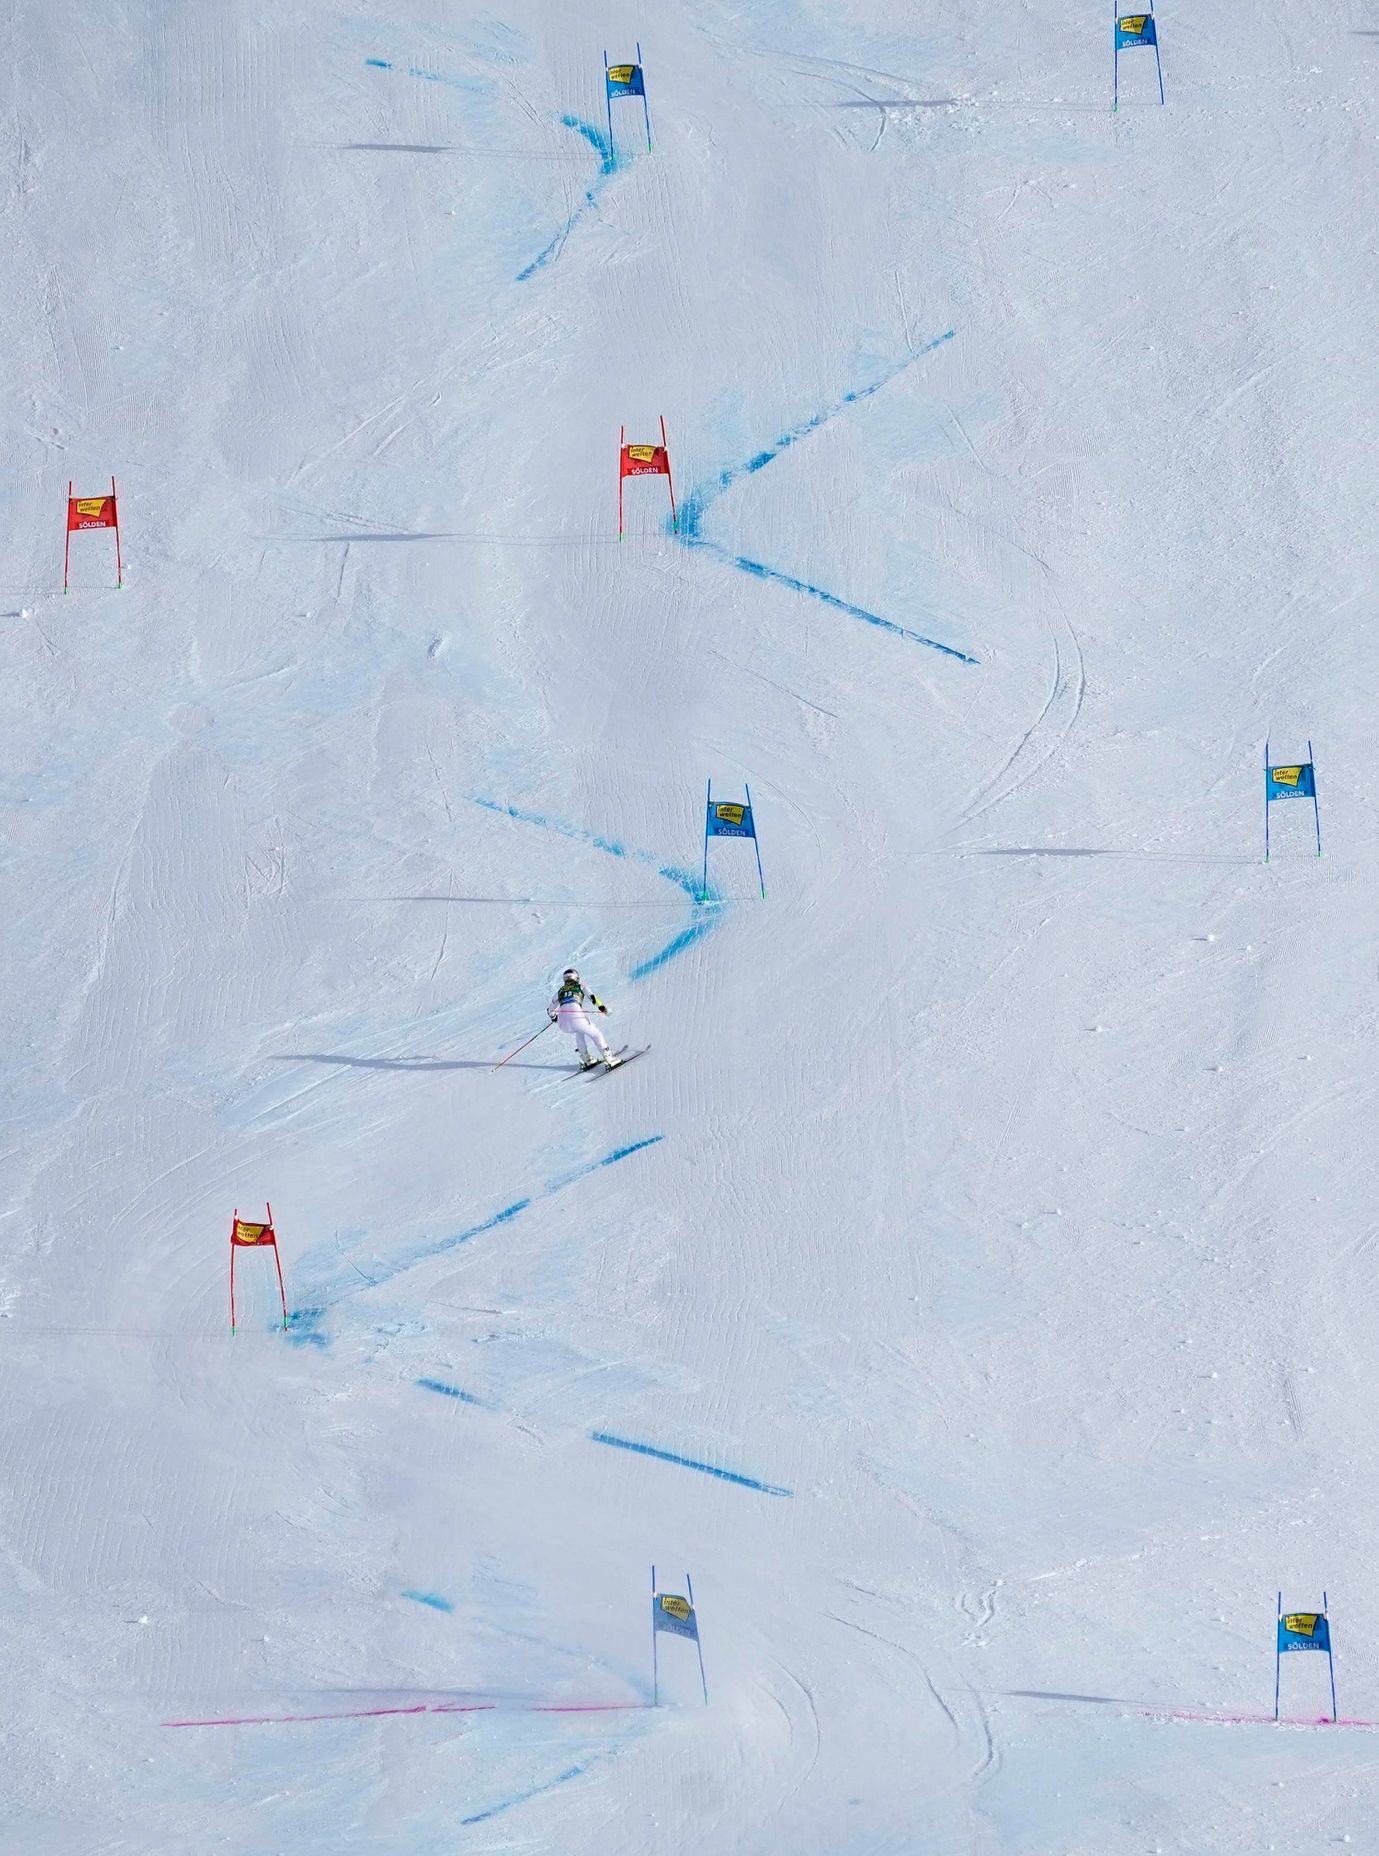 SP 2017-18, obří slalom Ž (Sölden): Lindsey Vonnová